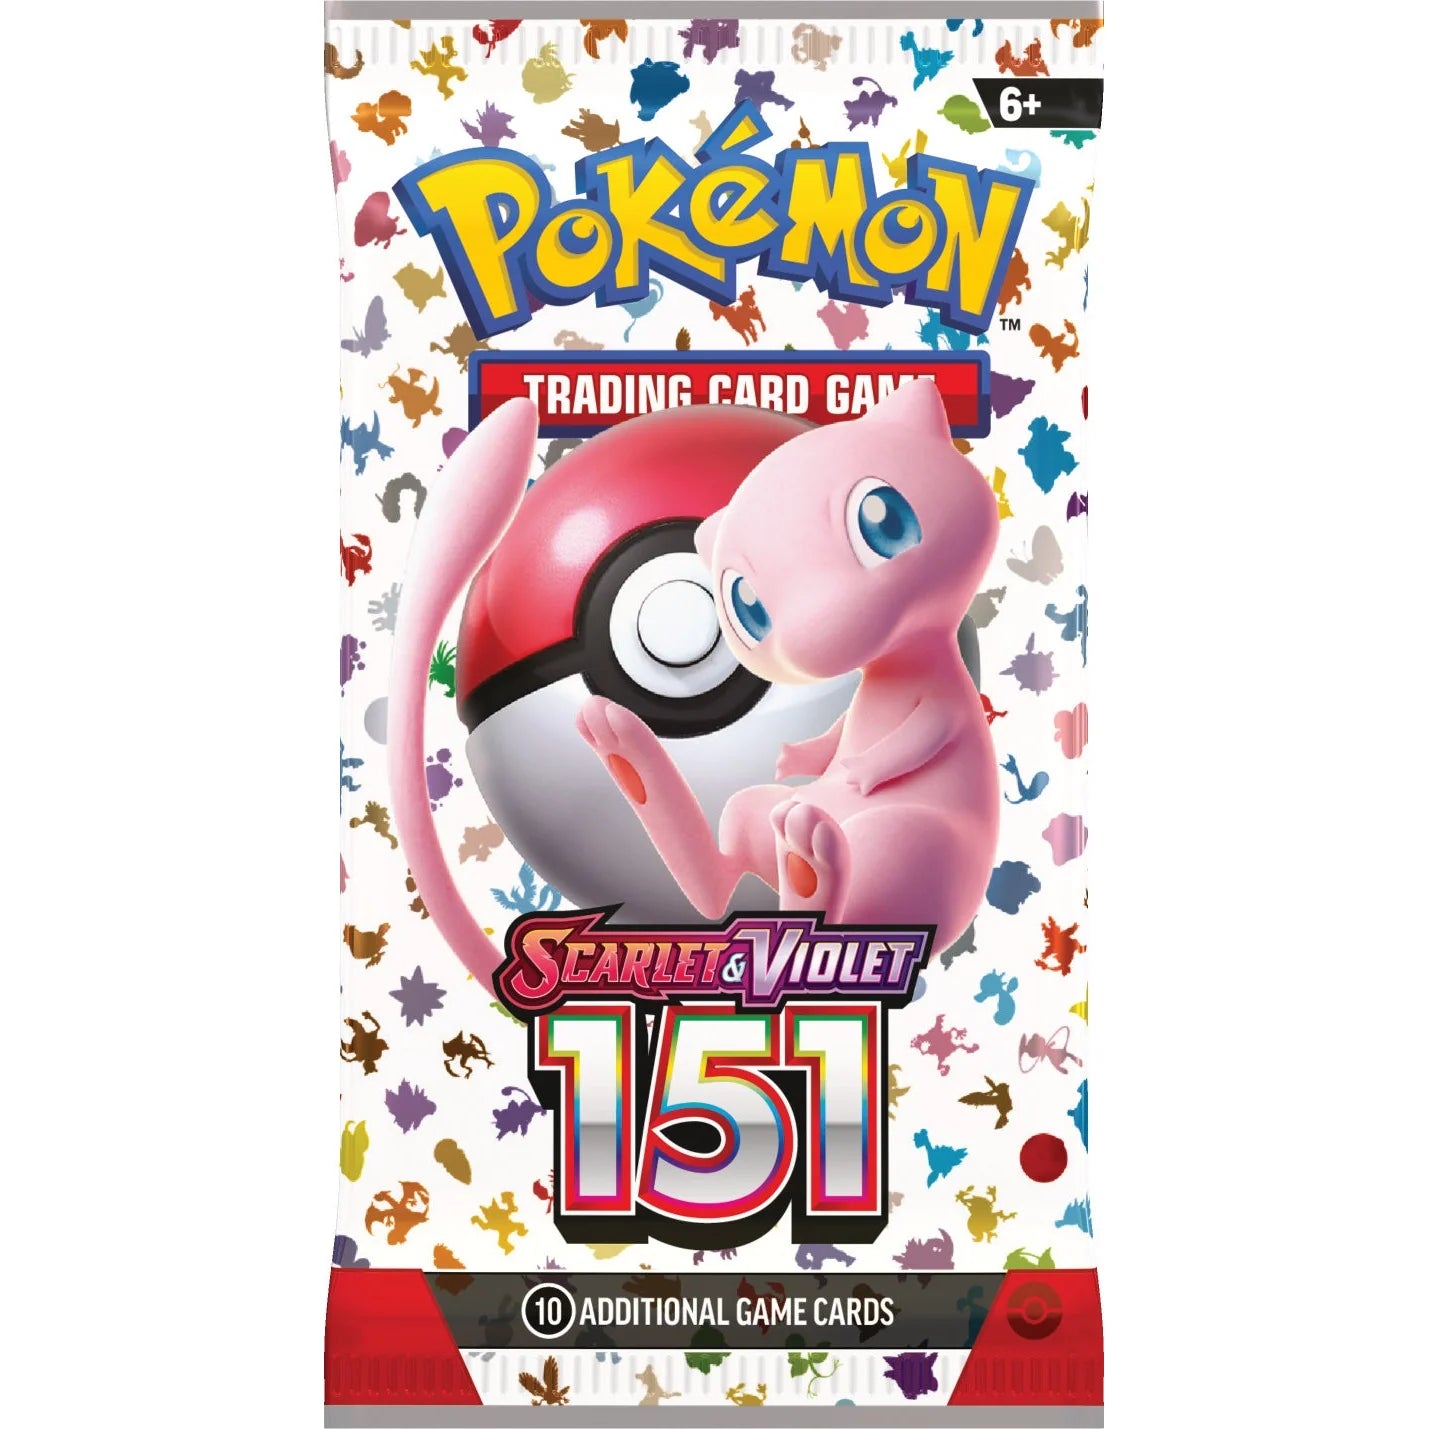 Pokémon: Scarlet & Violet - 151 Booster Pack